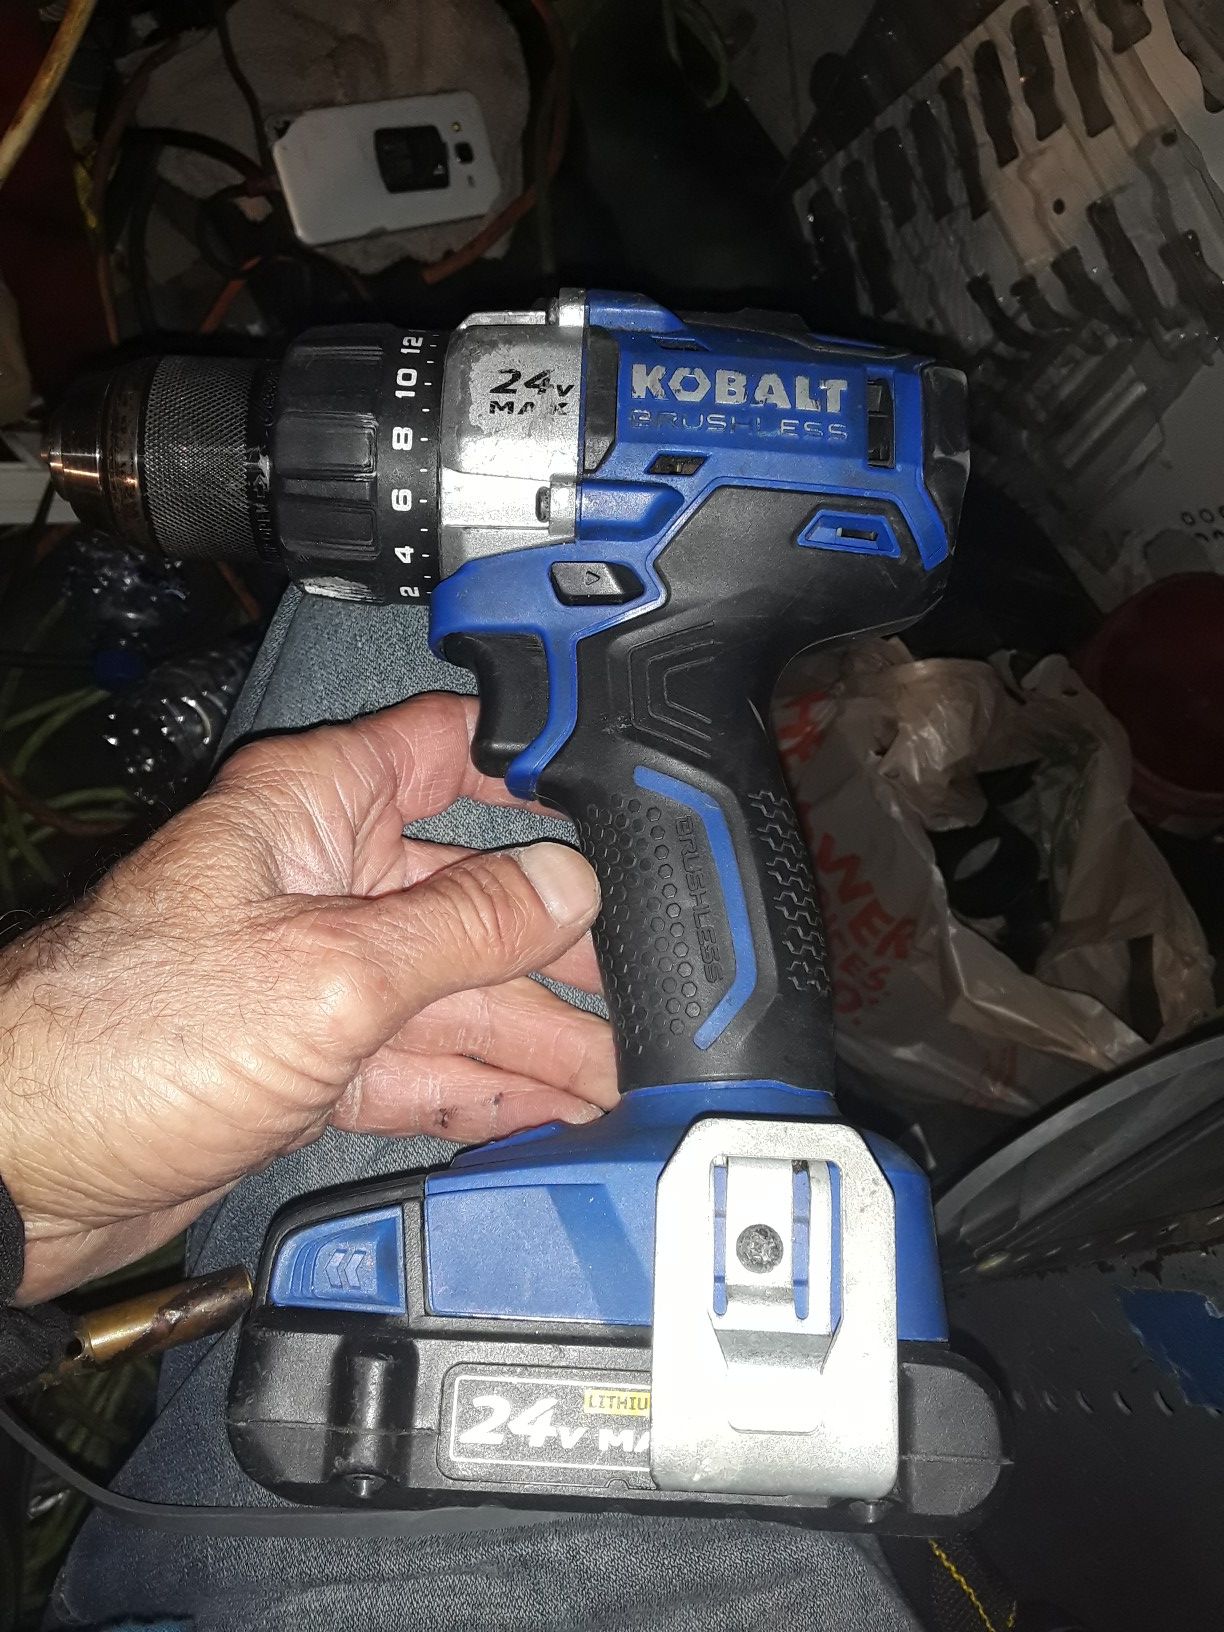 Kobalt 24 v cordless drill